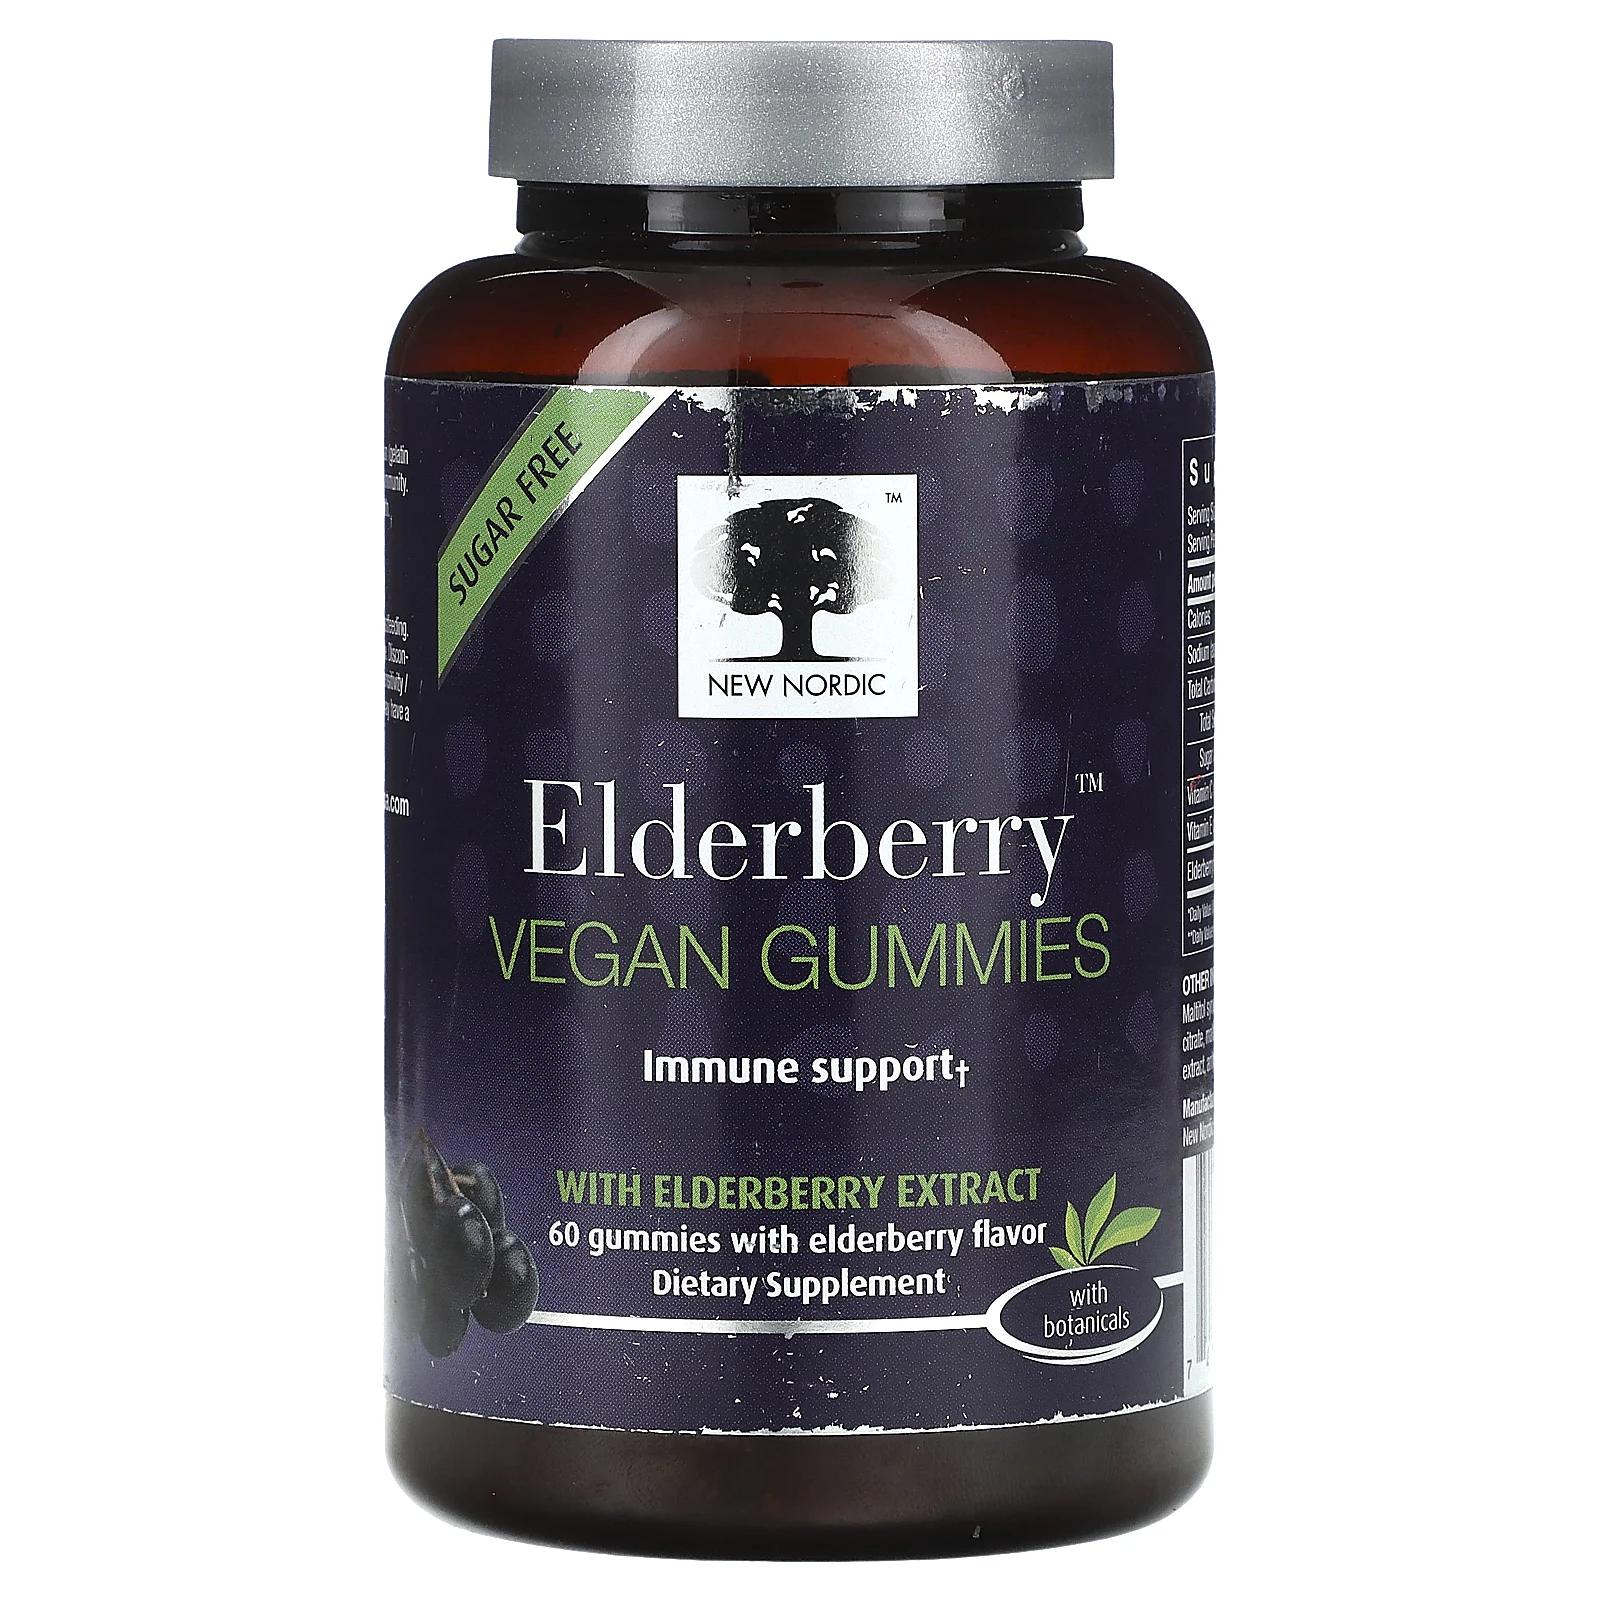 New Nordic Elderberry Vegan Gummies with Elderberry Extract 60 Gummies